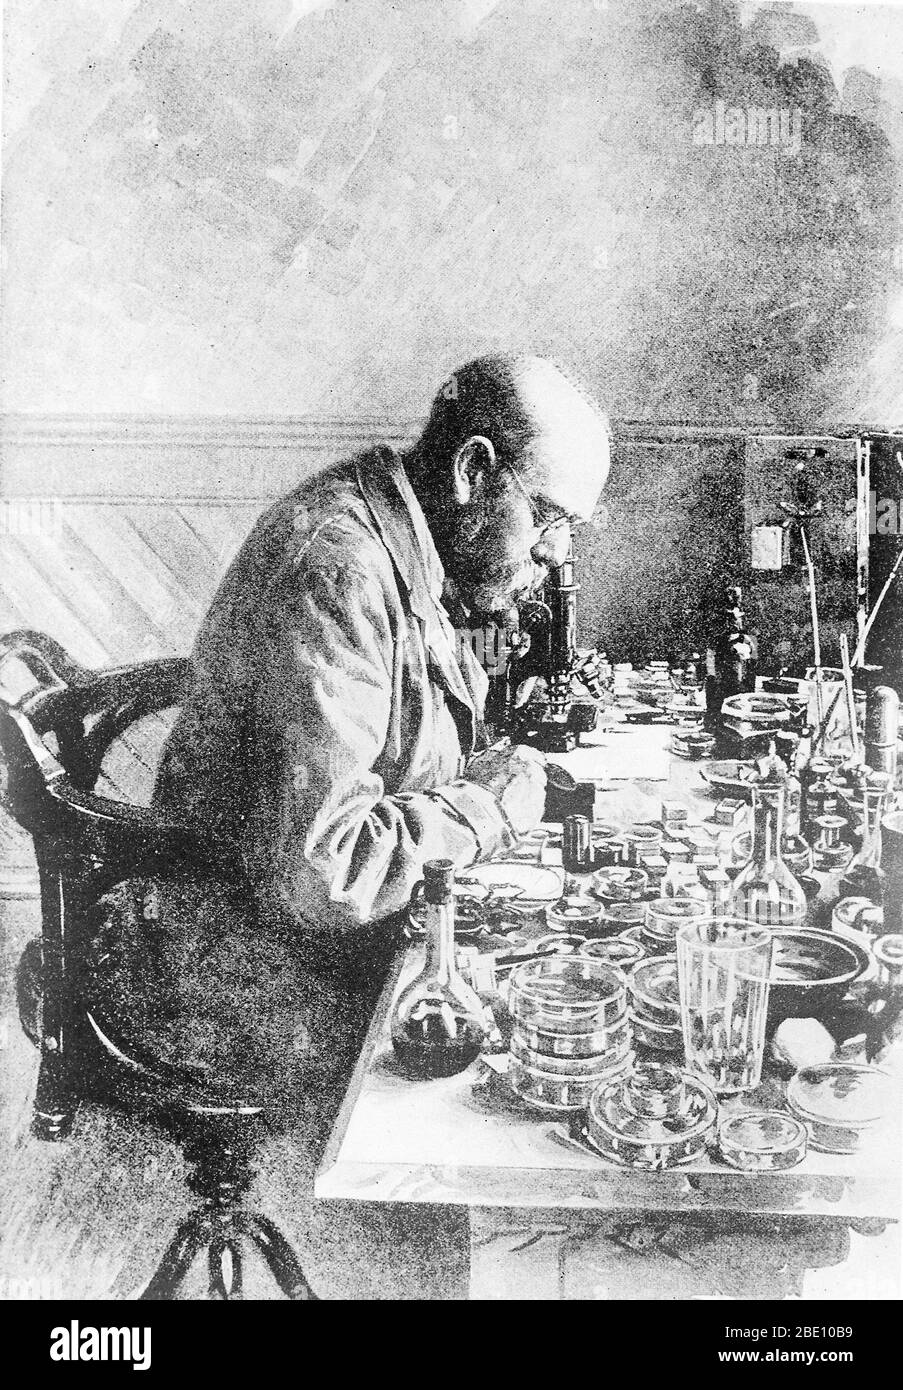 Heinrich Hermann Robert Koch (11. Dezember 1843 - 27. Mai 1910) war ein deutscher Arzt und Mikrobiologe. Als Begründer der modernen Bakteriologie identifizierte er die Erreger von Tuberkulose, Cholera und Anthrax und unterstützte das Konzept der Infektionskrankheit, das auch Experimente an Menschen und Tieren beinhaltete, experimentell. Koch schuf und verbesserte Labortechnologien und -Techniken und machte Schlüsselentdeckungen in der öffentlichen Gesundheit. Für seine Forschung zur Tuberkulose erhielt Koch 1905 den Nobelpreis für Physiologie oder Medizin. 1910 erlitt Koch einen Herzinfarkt und machte nie einen Stockfoto